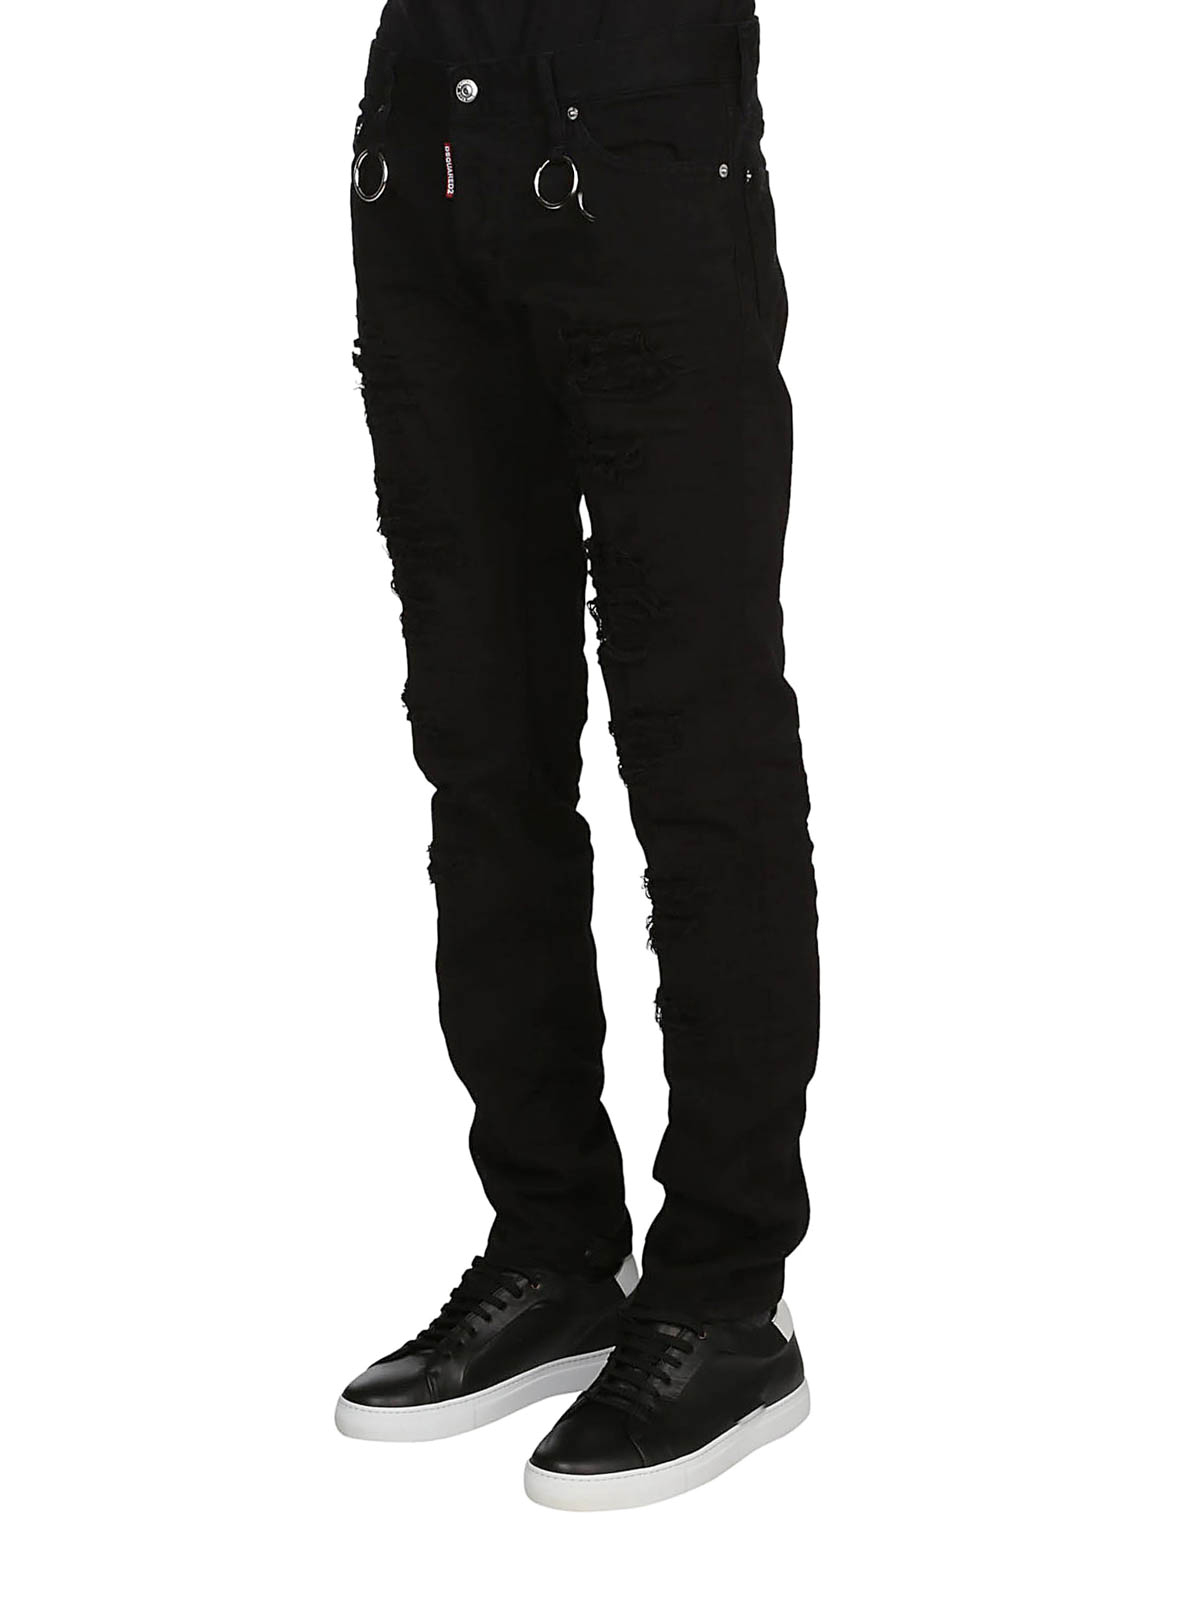 black skater jeans